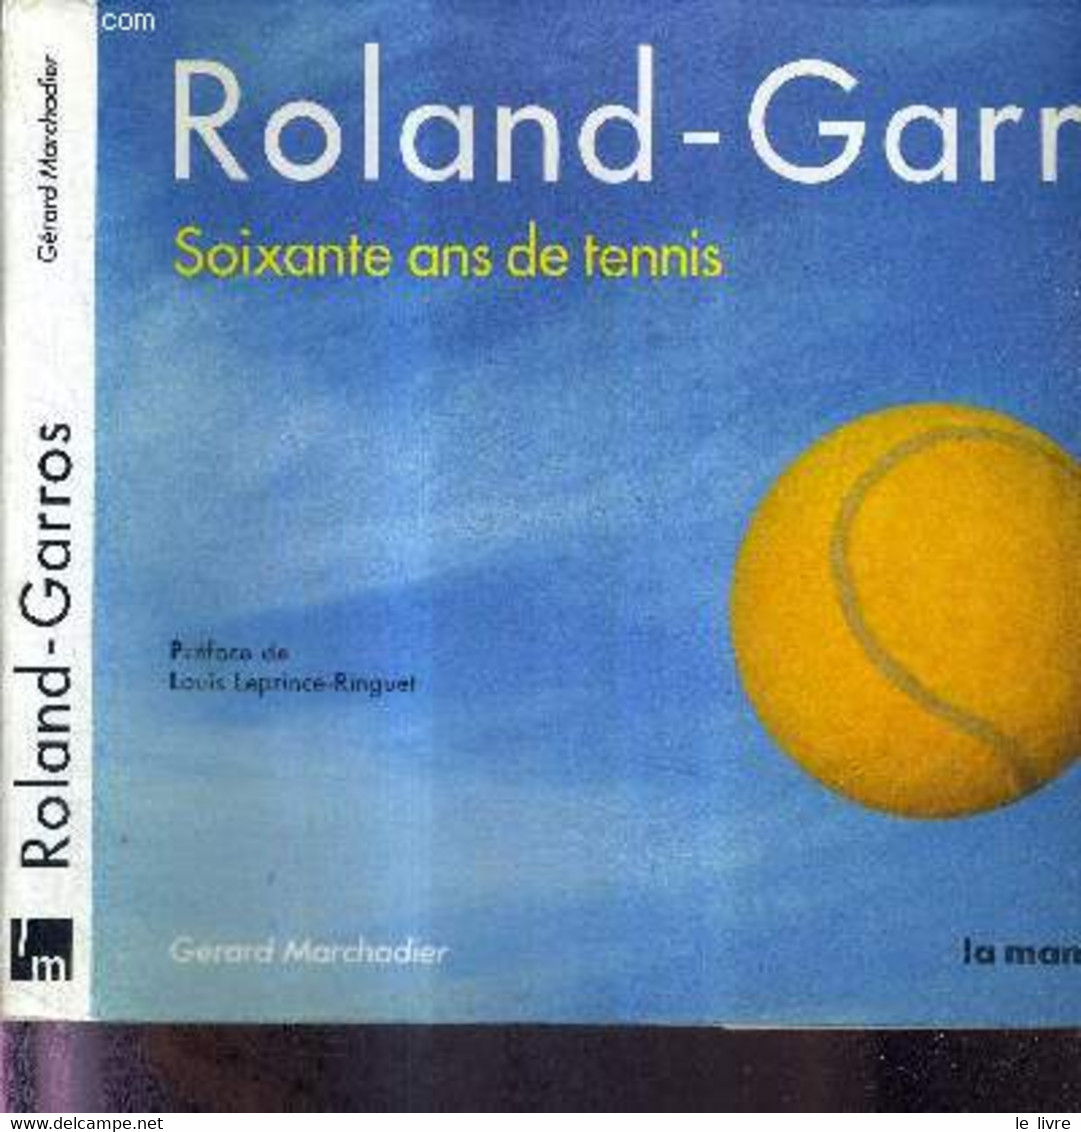 ROLAND-GARROS - SOIXANTE ANS DE TENNIS + DEDICACE DE Arantxa Sánchez Vicario - MARCHADIER GERARD - 1986 - Livres